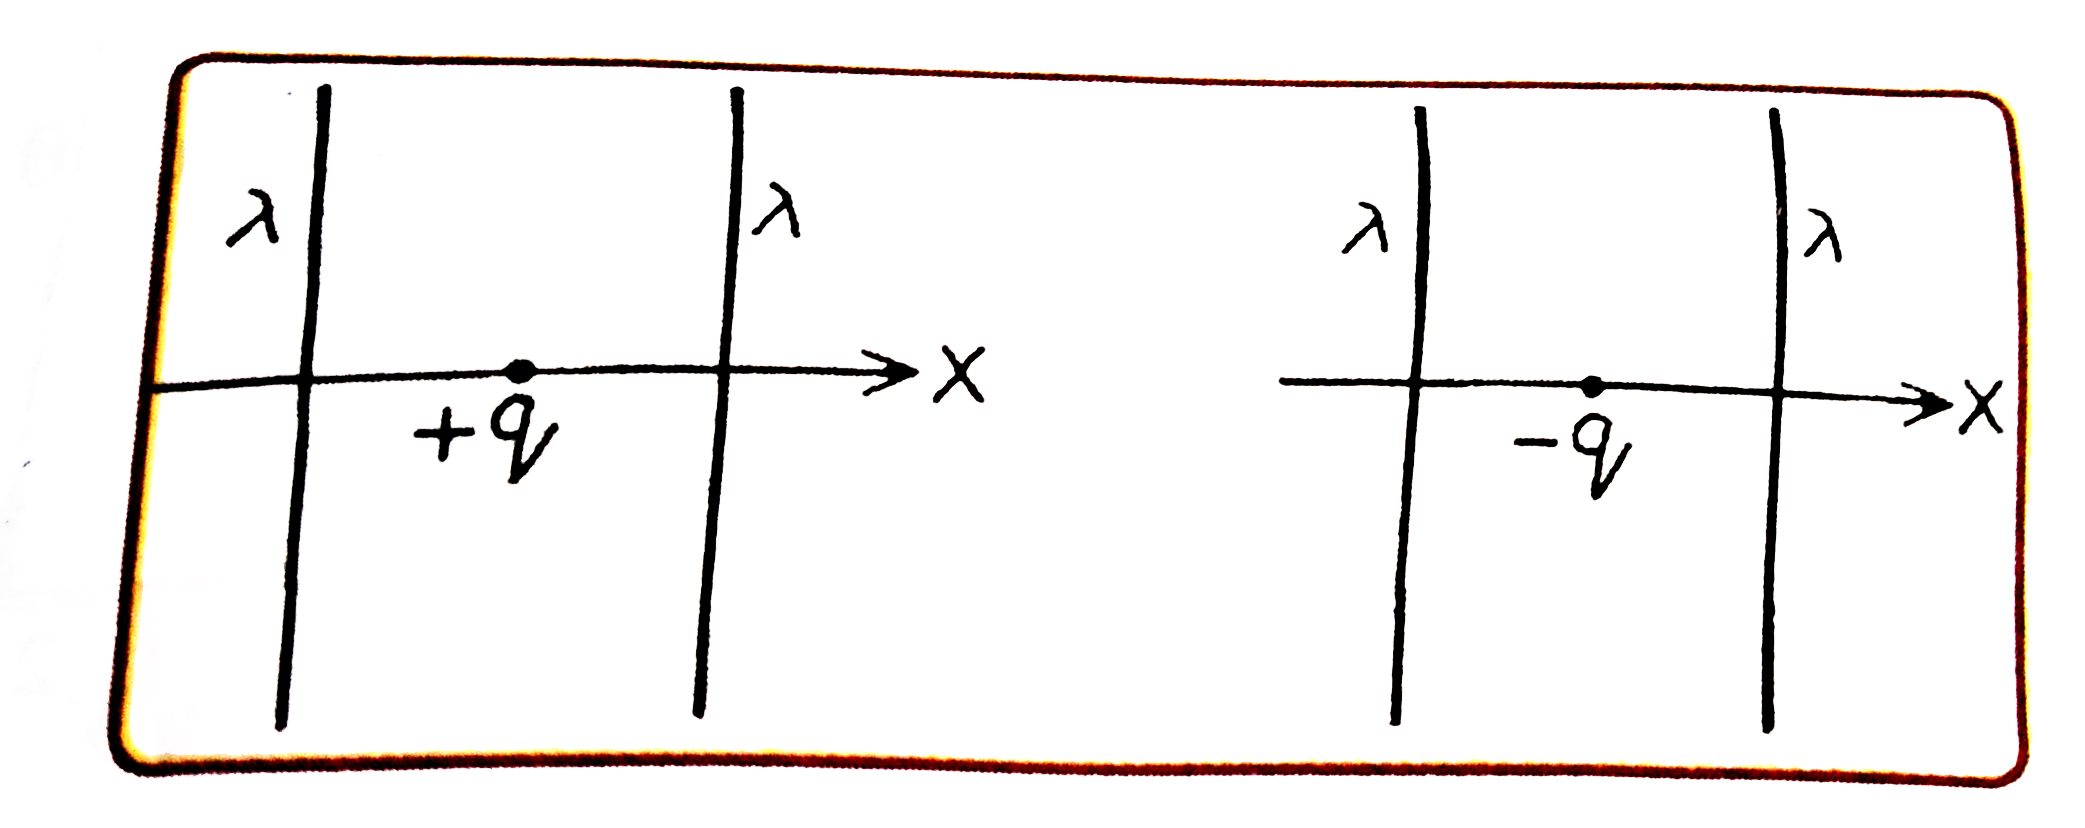 दिये गये चित्रों में दो स्थितियाँ दर्शायी गई है जिनमे दो अनंत लम्बाई के एकसमान रैखिक आवेश घनत्व lamda (धनात्मक) के सीधे तार परस्पर समांतर रखे गये है। चित्रानुसार q तथा -q मान के दो बिंदु आवेश तारो से समान दूरी पर उनके वैद्युत क्षेत्र में साम्यावस्था में रखे हुये है। ये आवेश केवल X -दिशा में चल सकते है। यदि आवेशों को उनकी साम्यावस्था से थोड़ा-सा विस्थापित कराया जाये, तो सही विकल्प है: